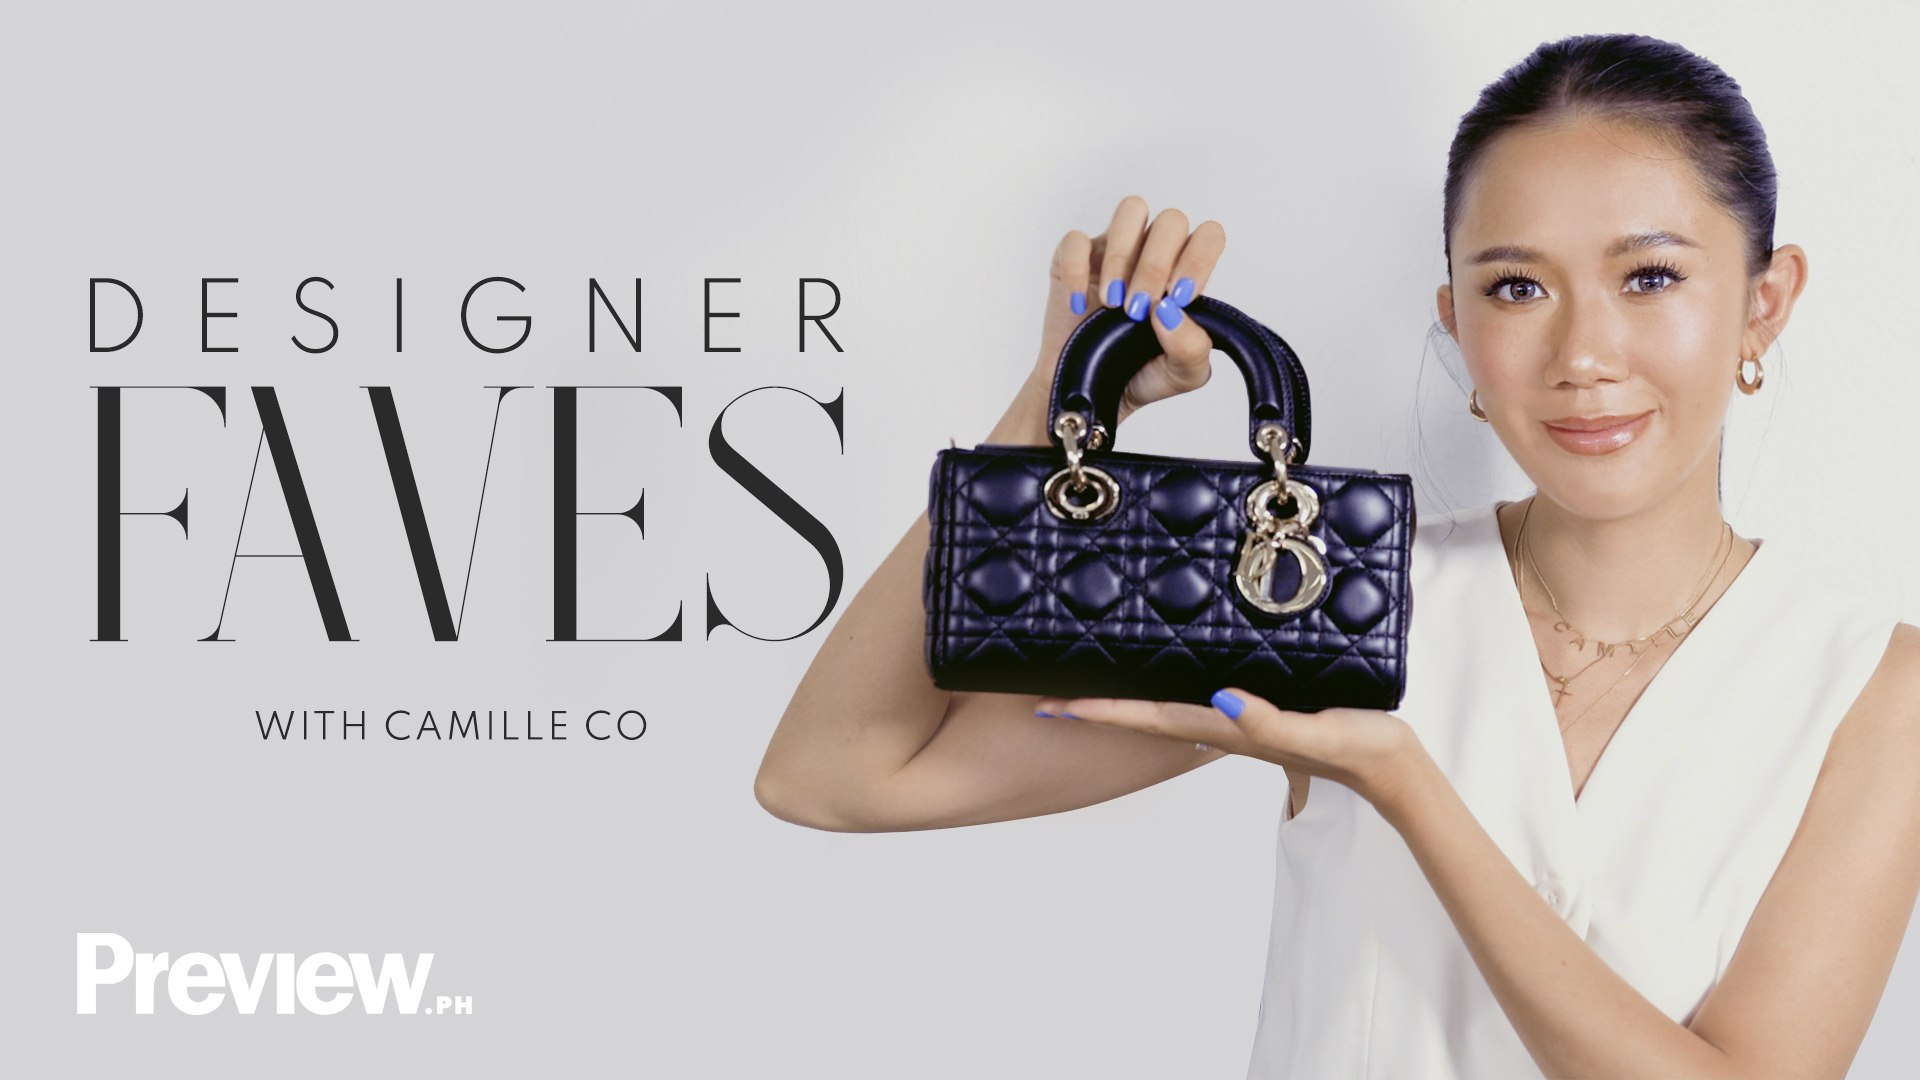 Camille Prats shares her favorite designer items